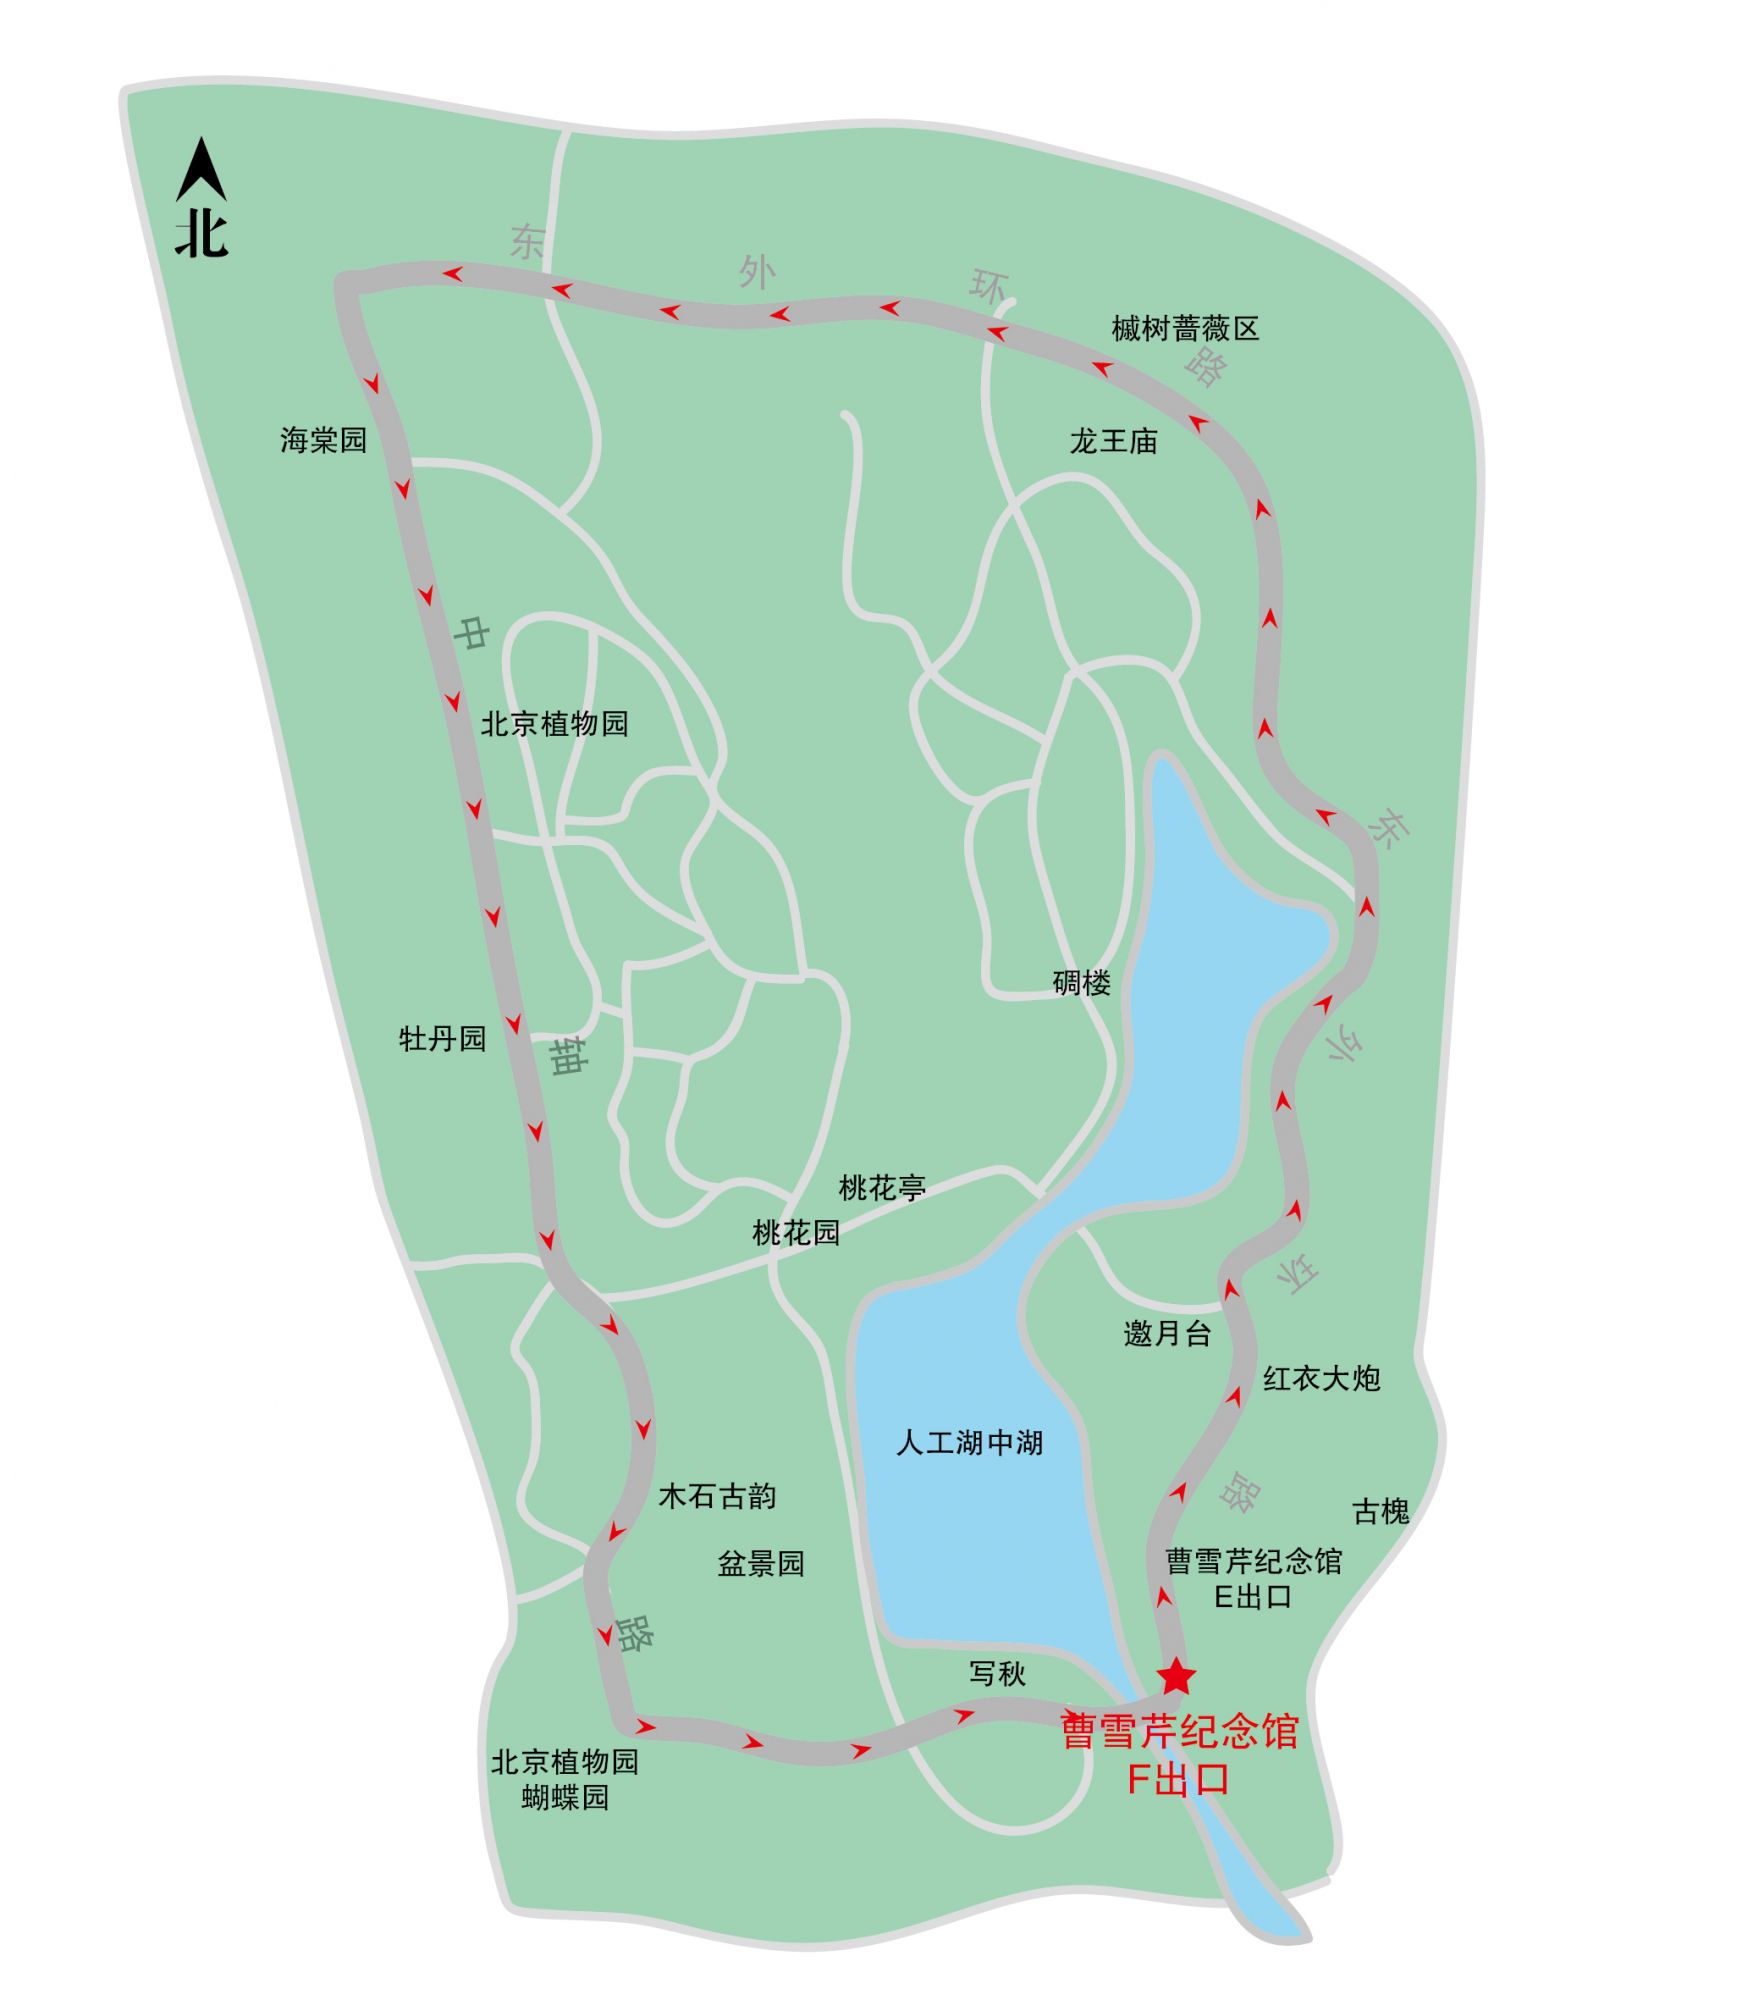 北京植物园旅游攻略图片